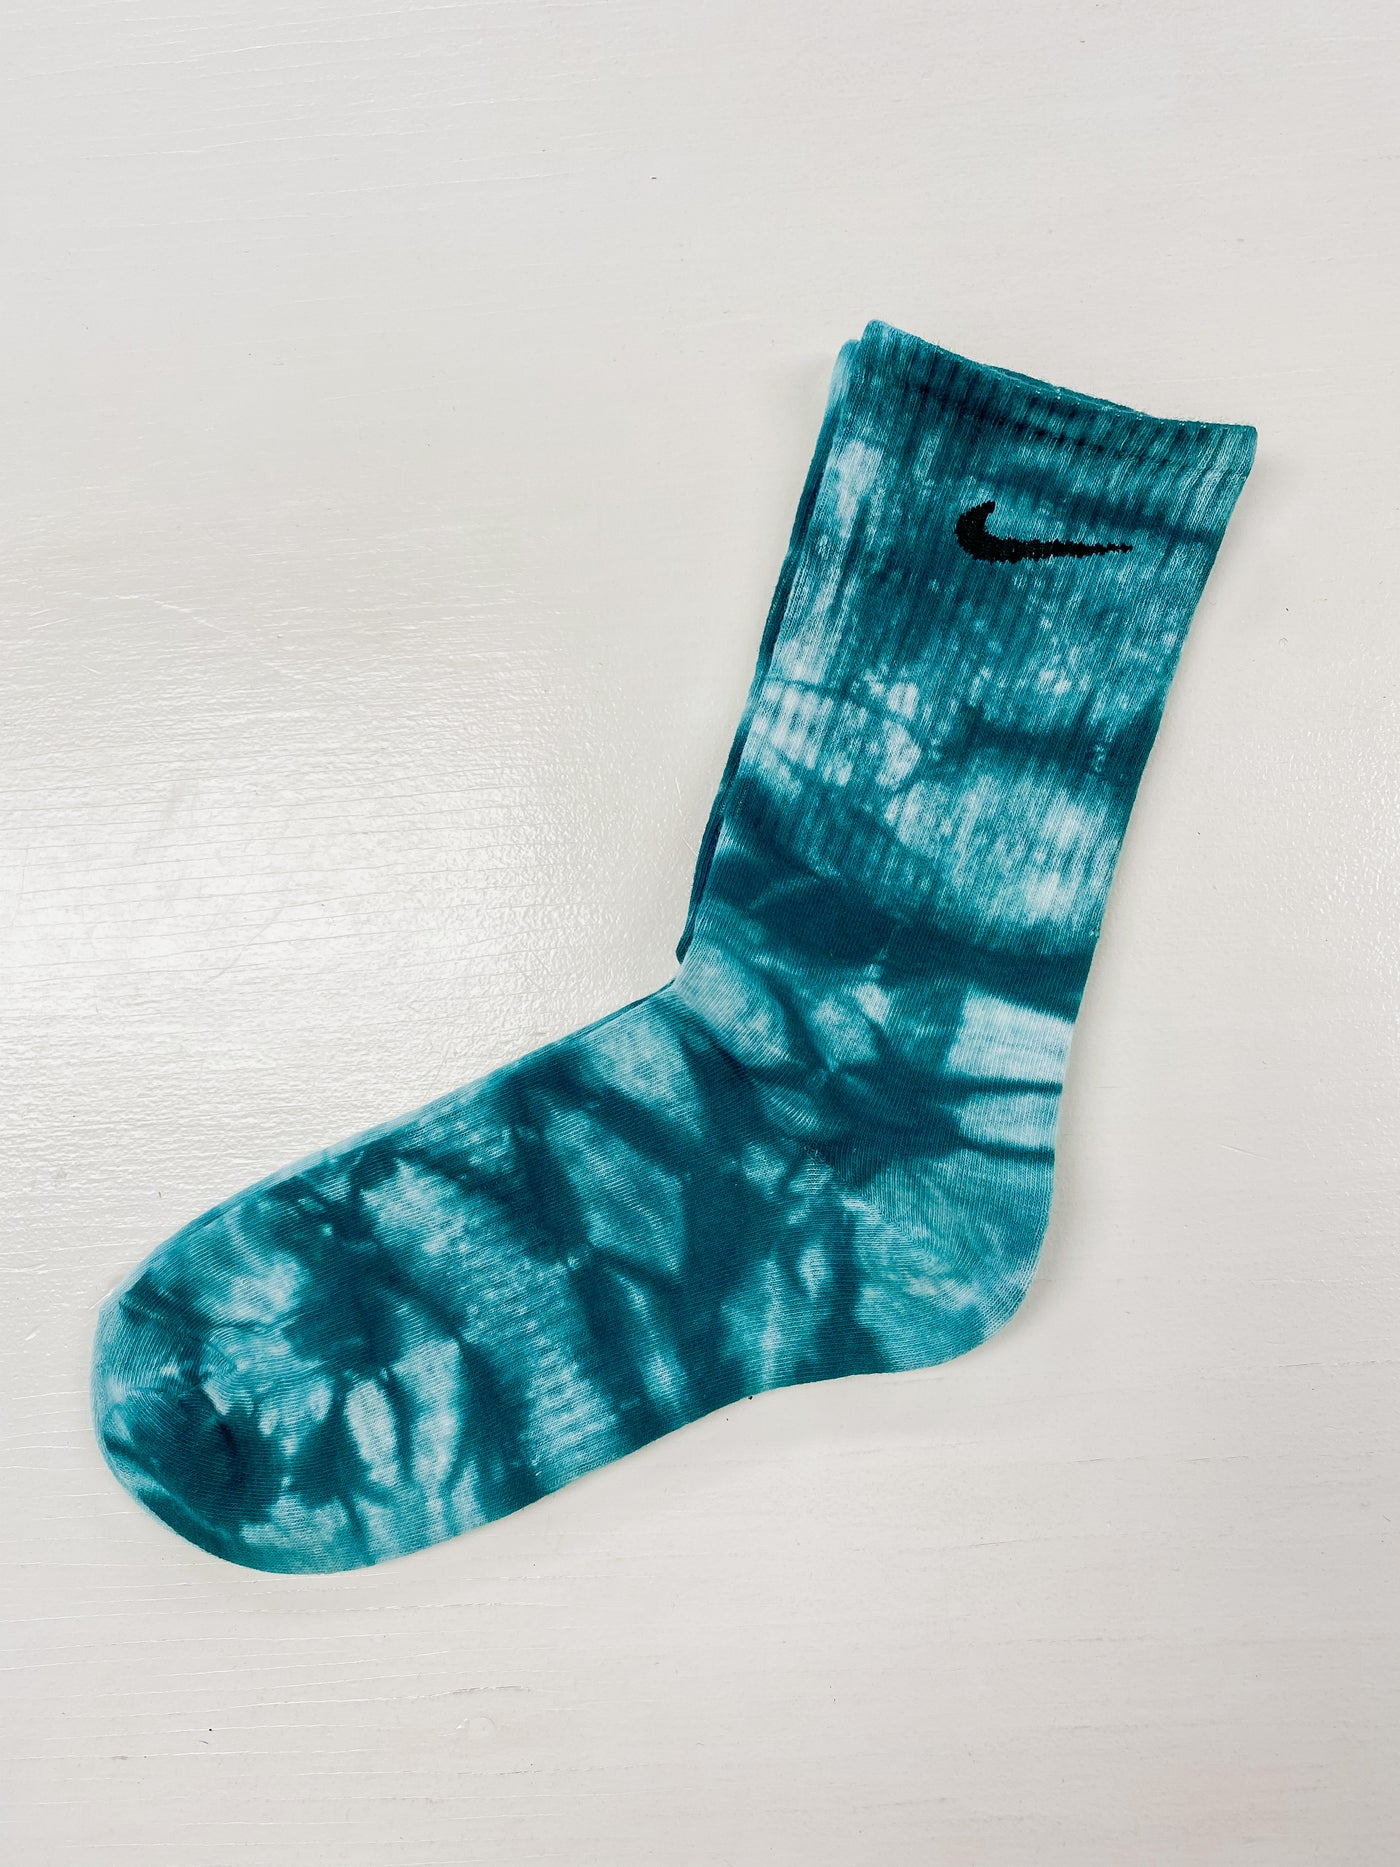 Tye Dye Nike Socks fit size 5-9